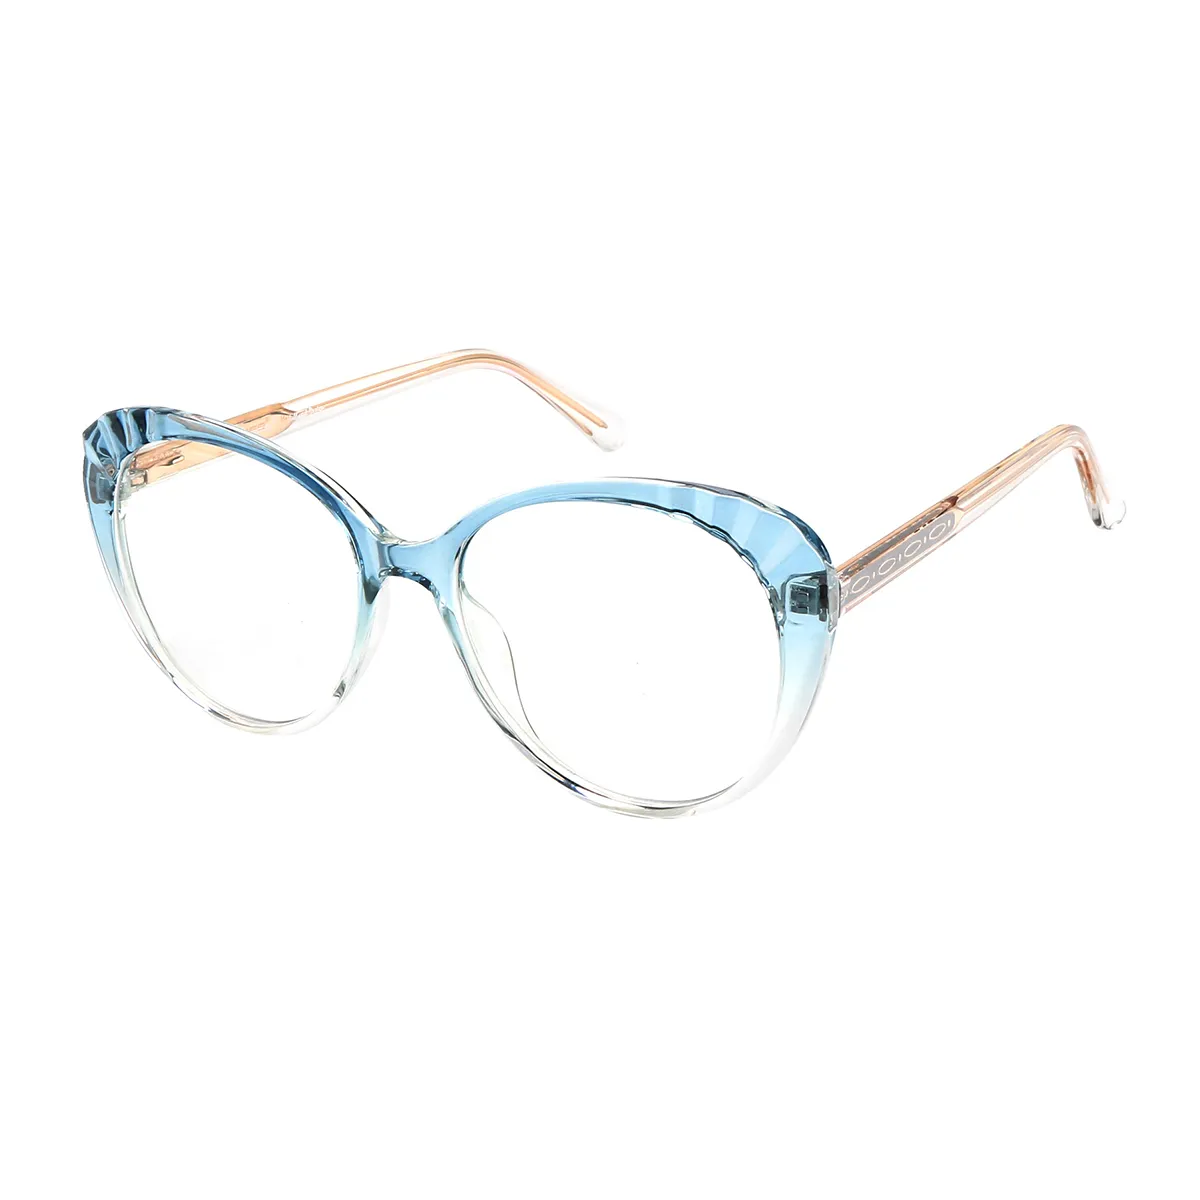 Ayre - Oval Blue Glasses for Women - EFE